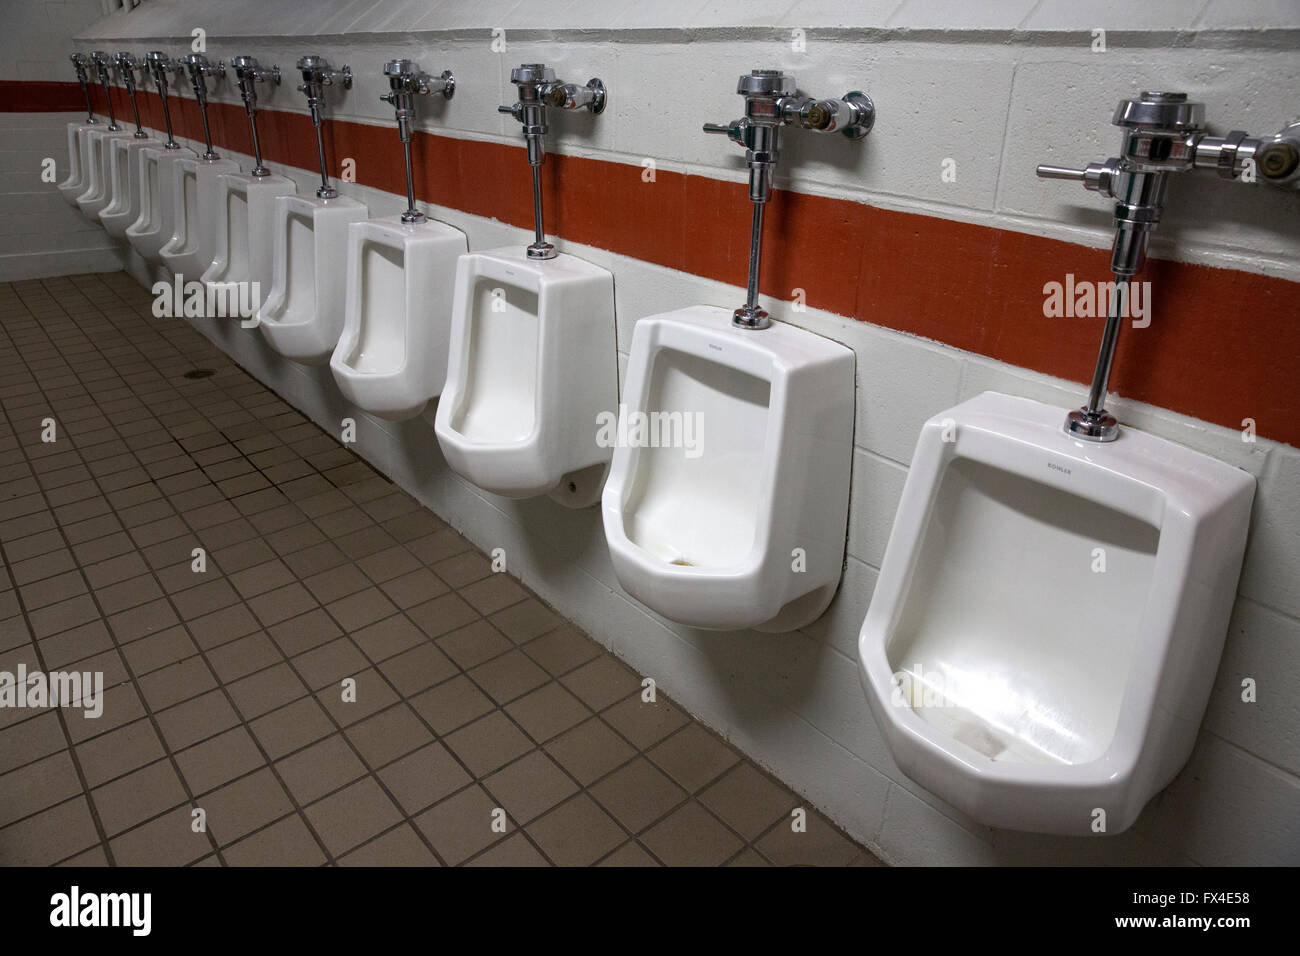 Aseos públicos urinarios Foto de stock